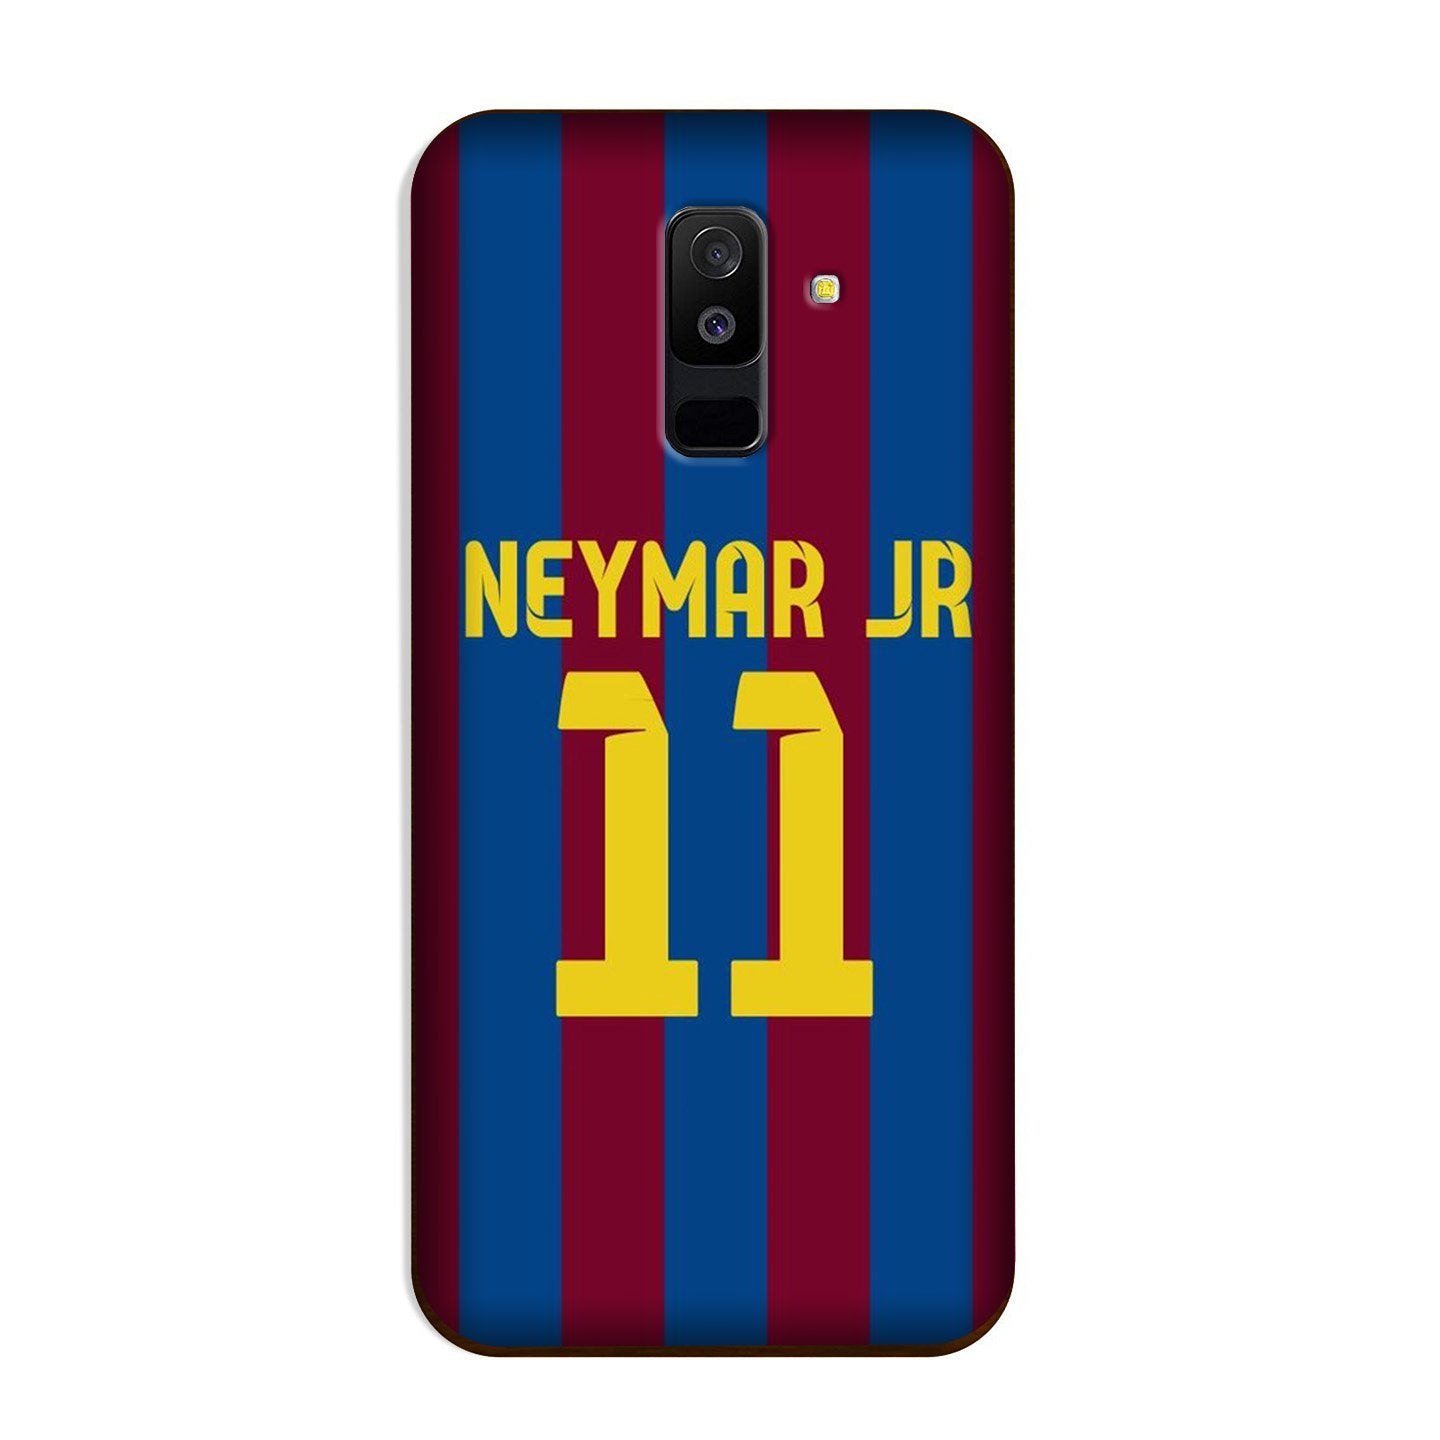 Neymar Jr Case for Galaxy A6 Plus  (Design - 162)